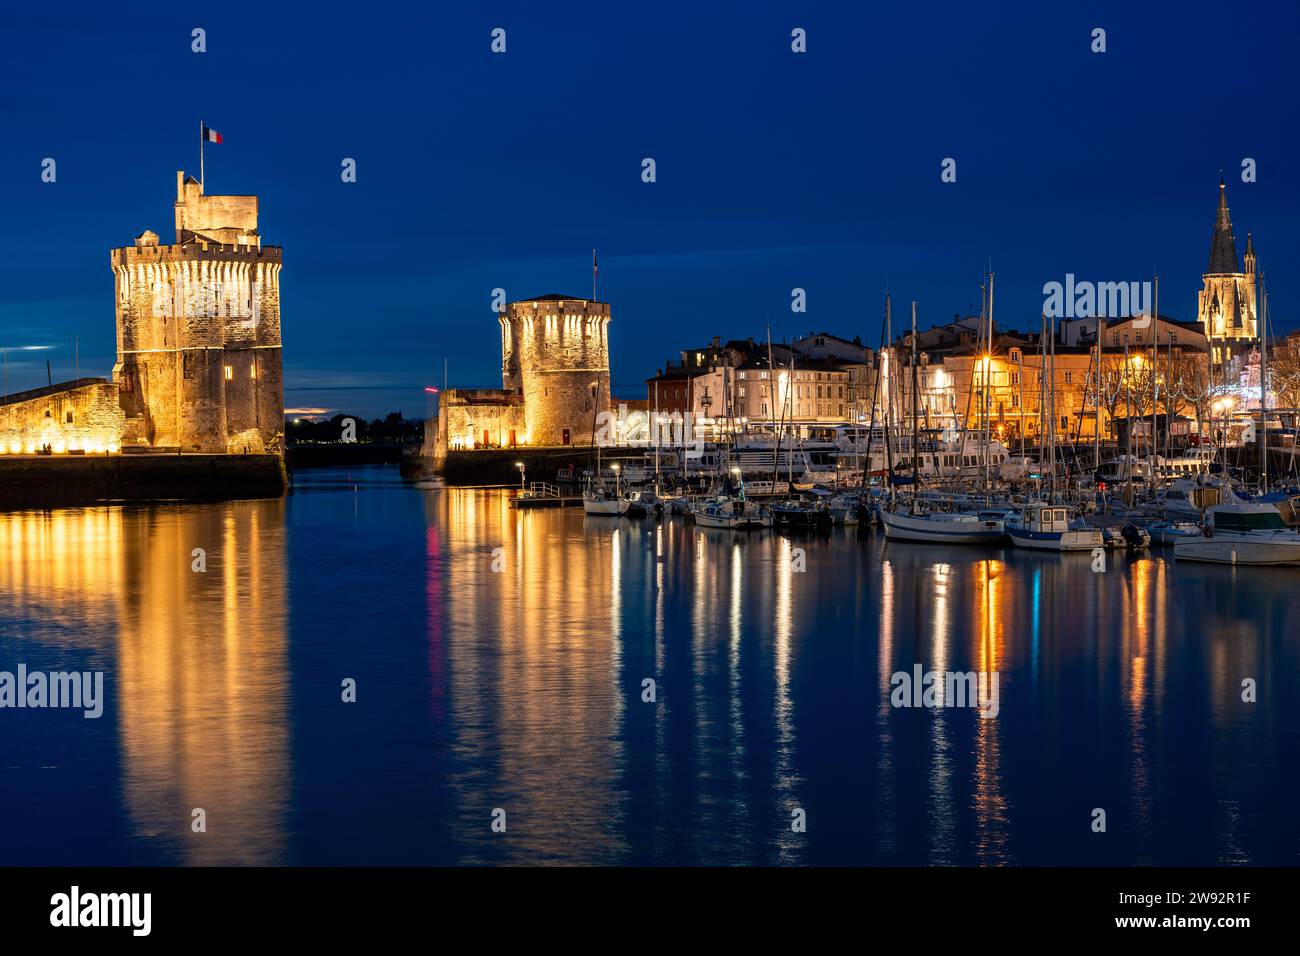 Splendido paesaggio urbano illuminato del vecchio porto di la Rochelle di notte con ciyilights festivi Foto Stock